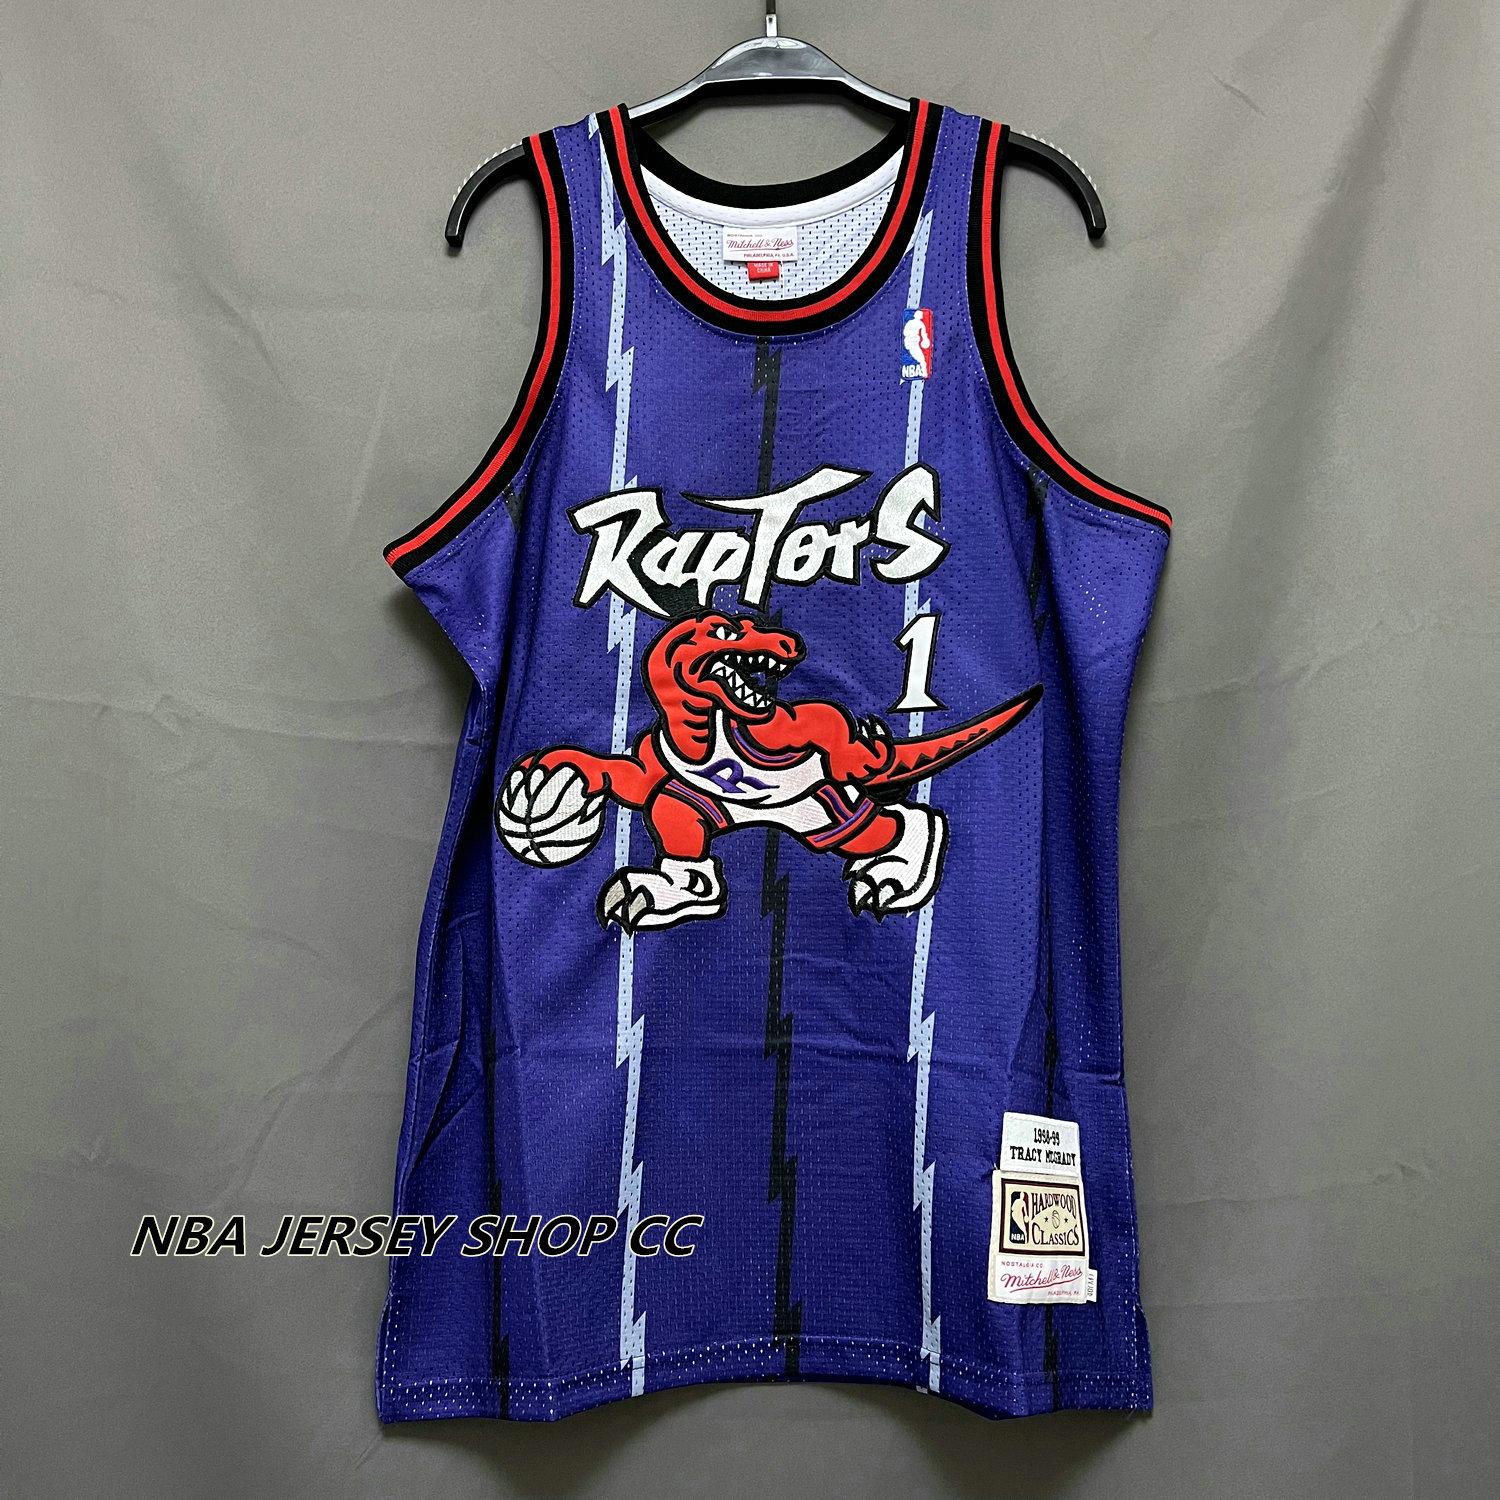 Buy Mitchell & Ness Toronto Raptors Vince Carter '98-'99 #15